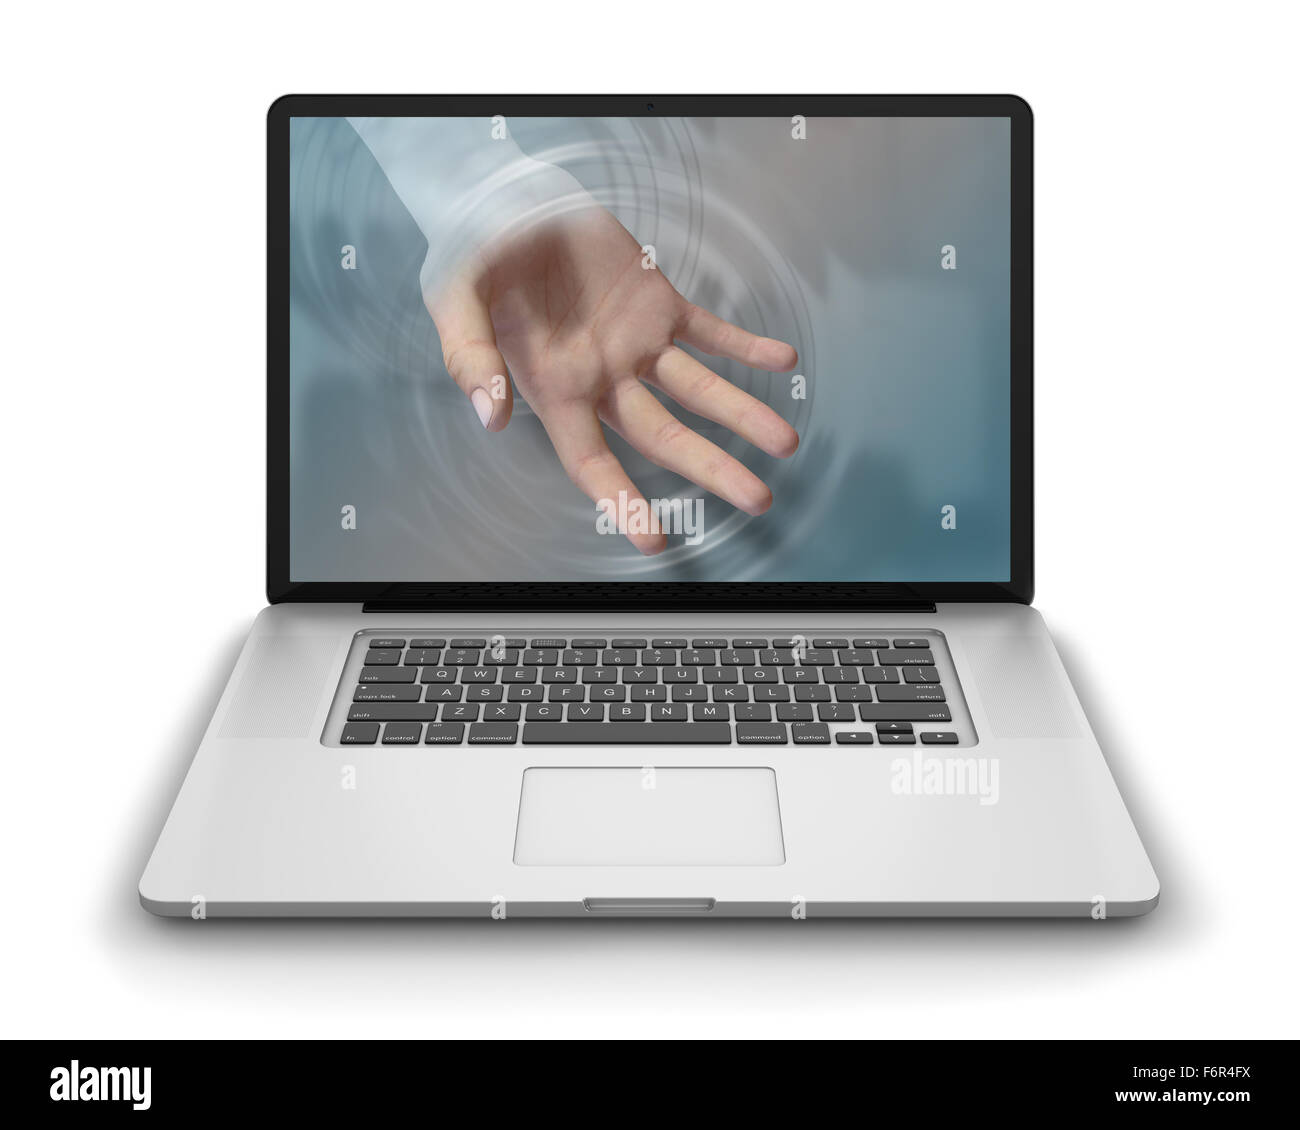 Helfende Hand erreicht durch Laptop-Computer Bildschirm ihre Benutzer Hilfe und Unterstützung anzubieten. Fotorealistische 3D render, isolat Stockfoto